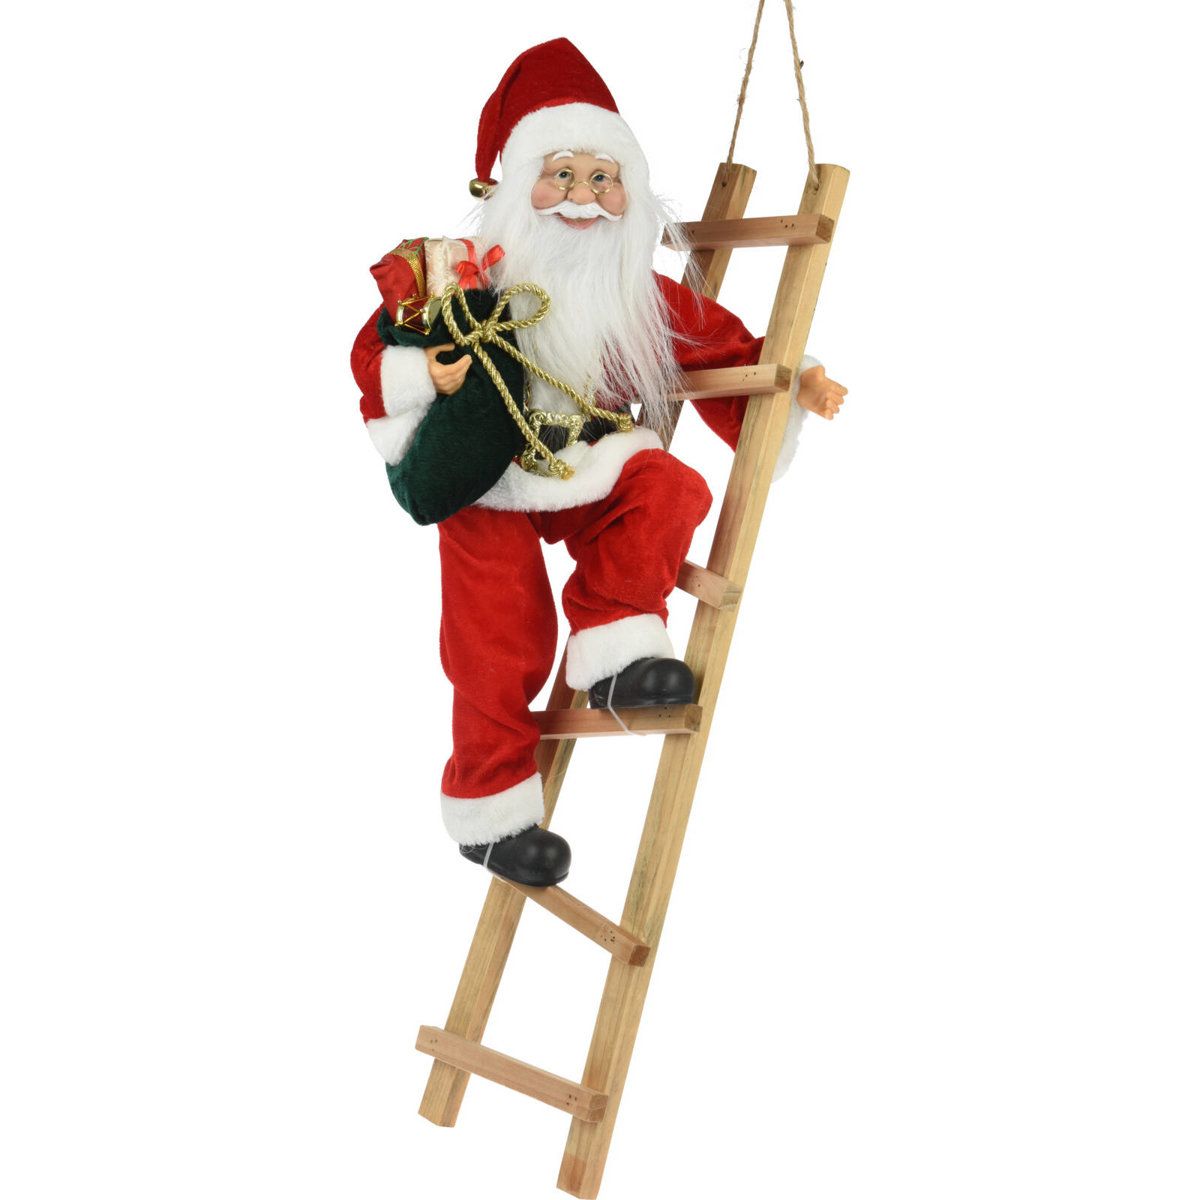 Home Styling Collection Vánoční dekorace Santa Claus na žebříku s dárkem, 69 cm - EMAKO.CZ s.r.o.